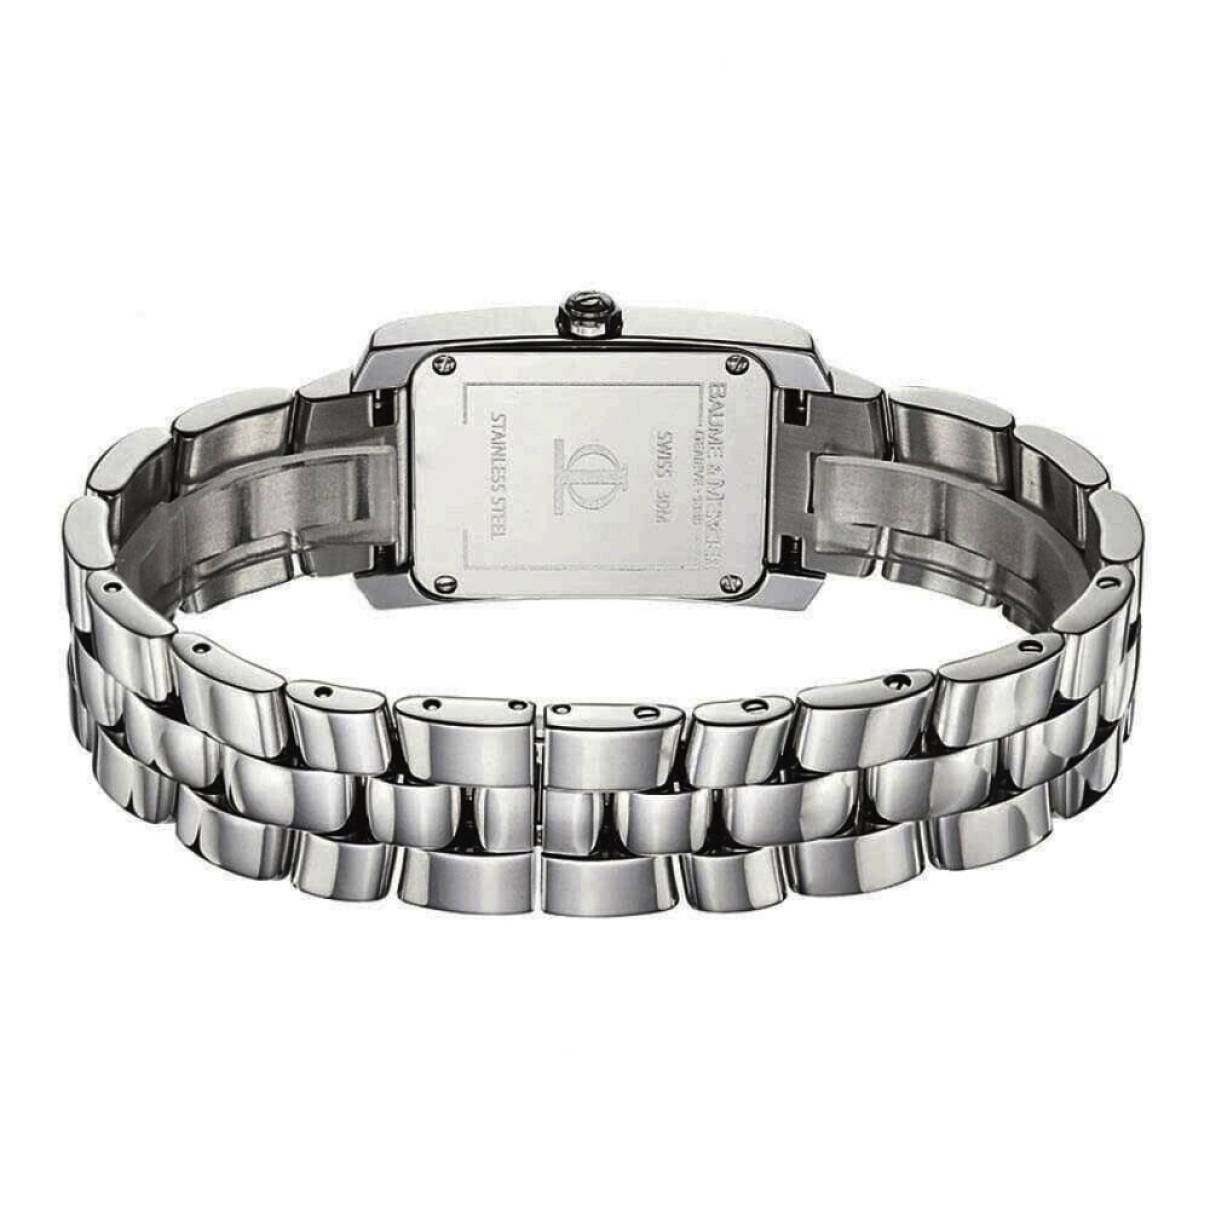 Buy Baume & Mercier Watch online